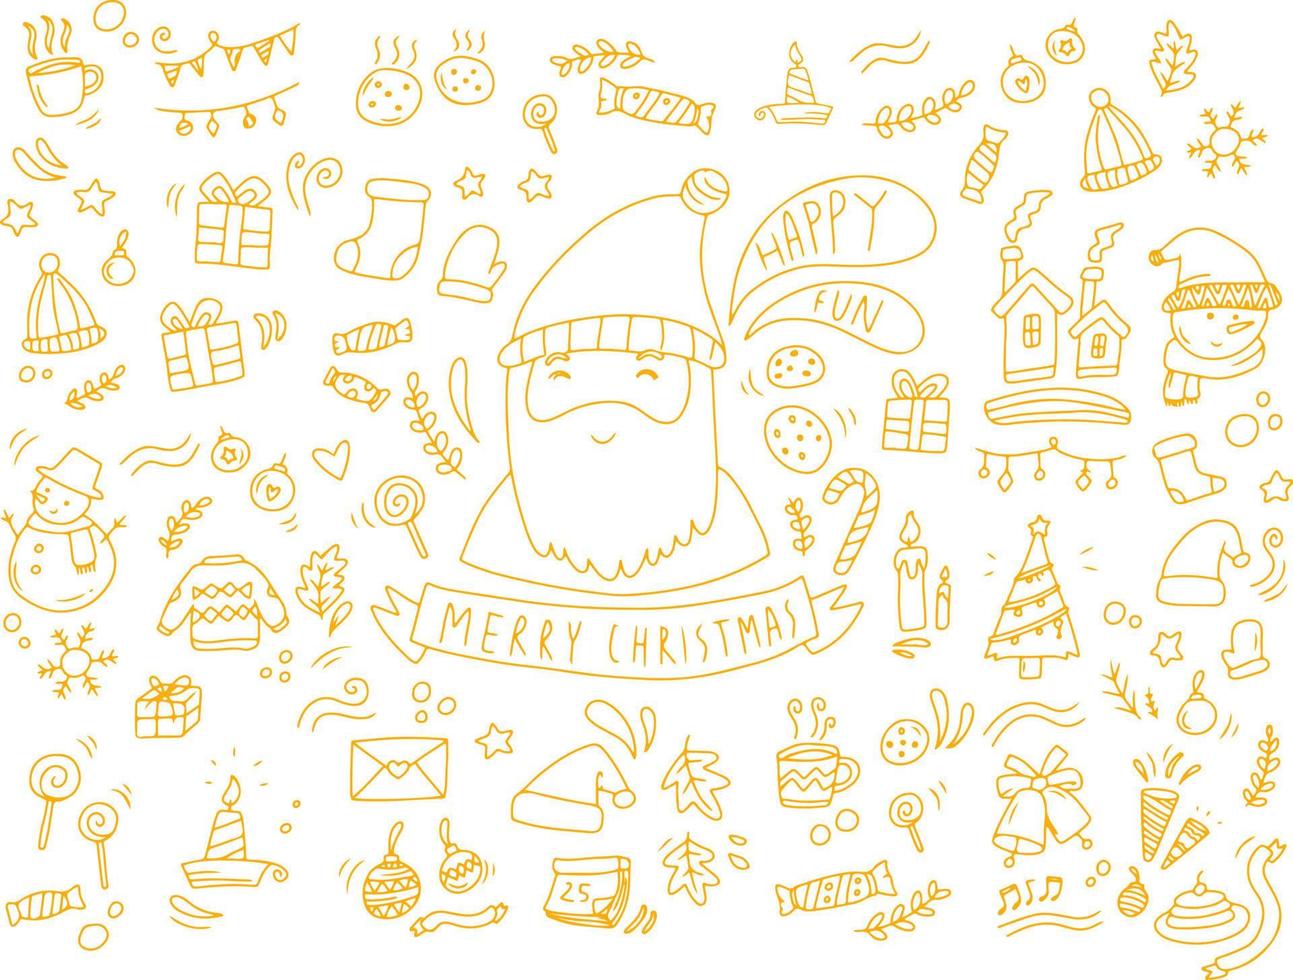 vrolijk kerstmis. vector illustratie van Kerstmis pictogrammen tekening